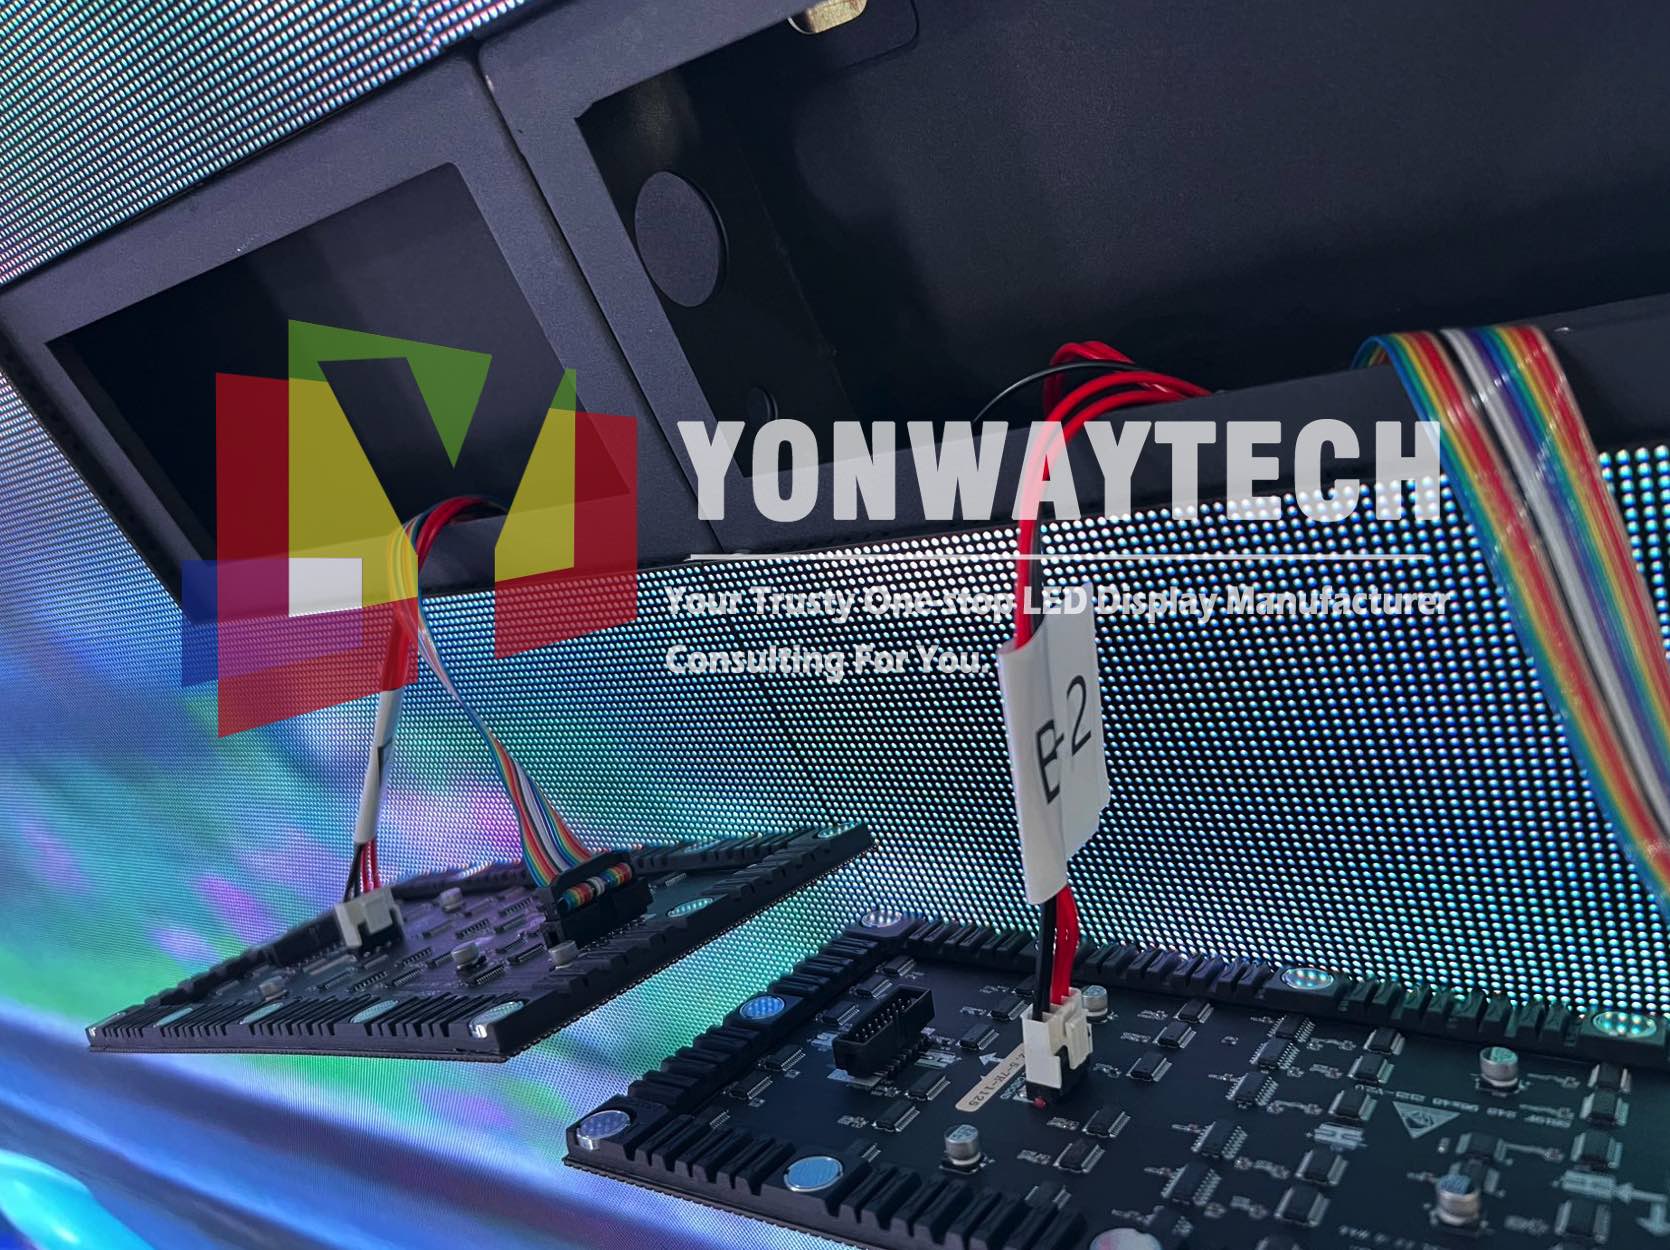 ഉയർന്ന പുതുക്കൽ സോഫ്റ്റ് ലെഡ് മൊഡ്യൂൾ ഡിസ്പ്ലേ Yonwaytech LED